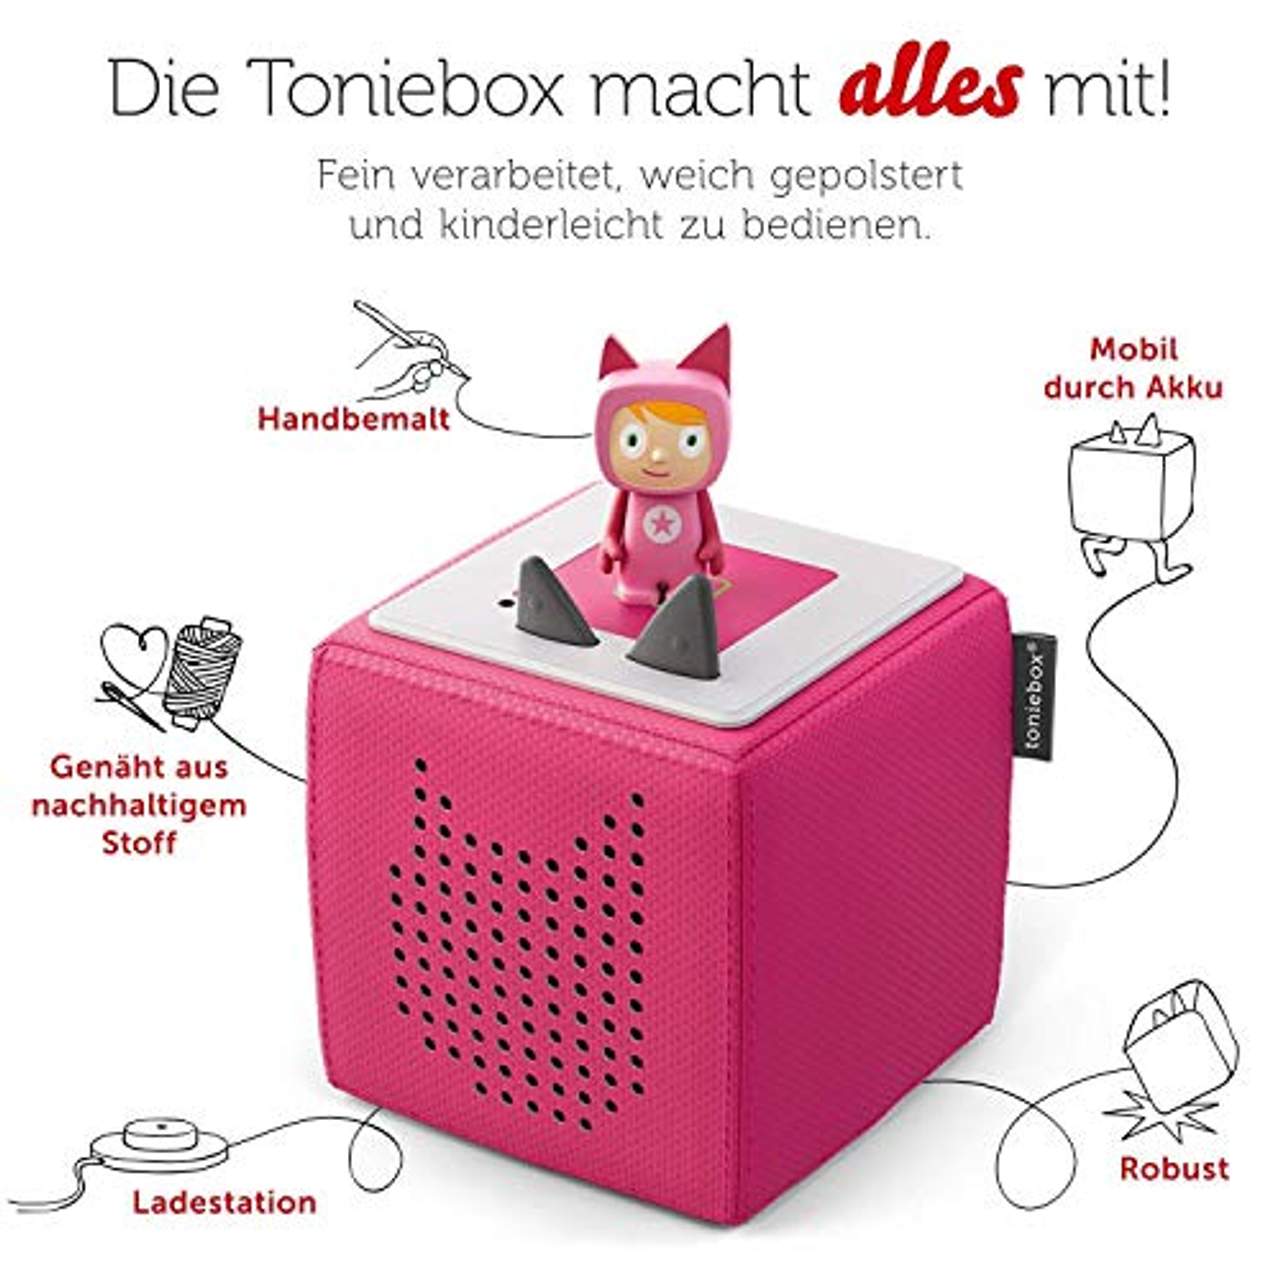 Toniebox Starterset in Pink: Toniebox